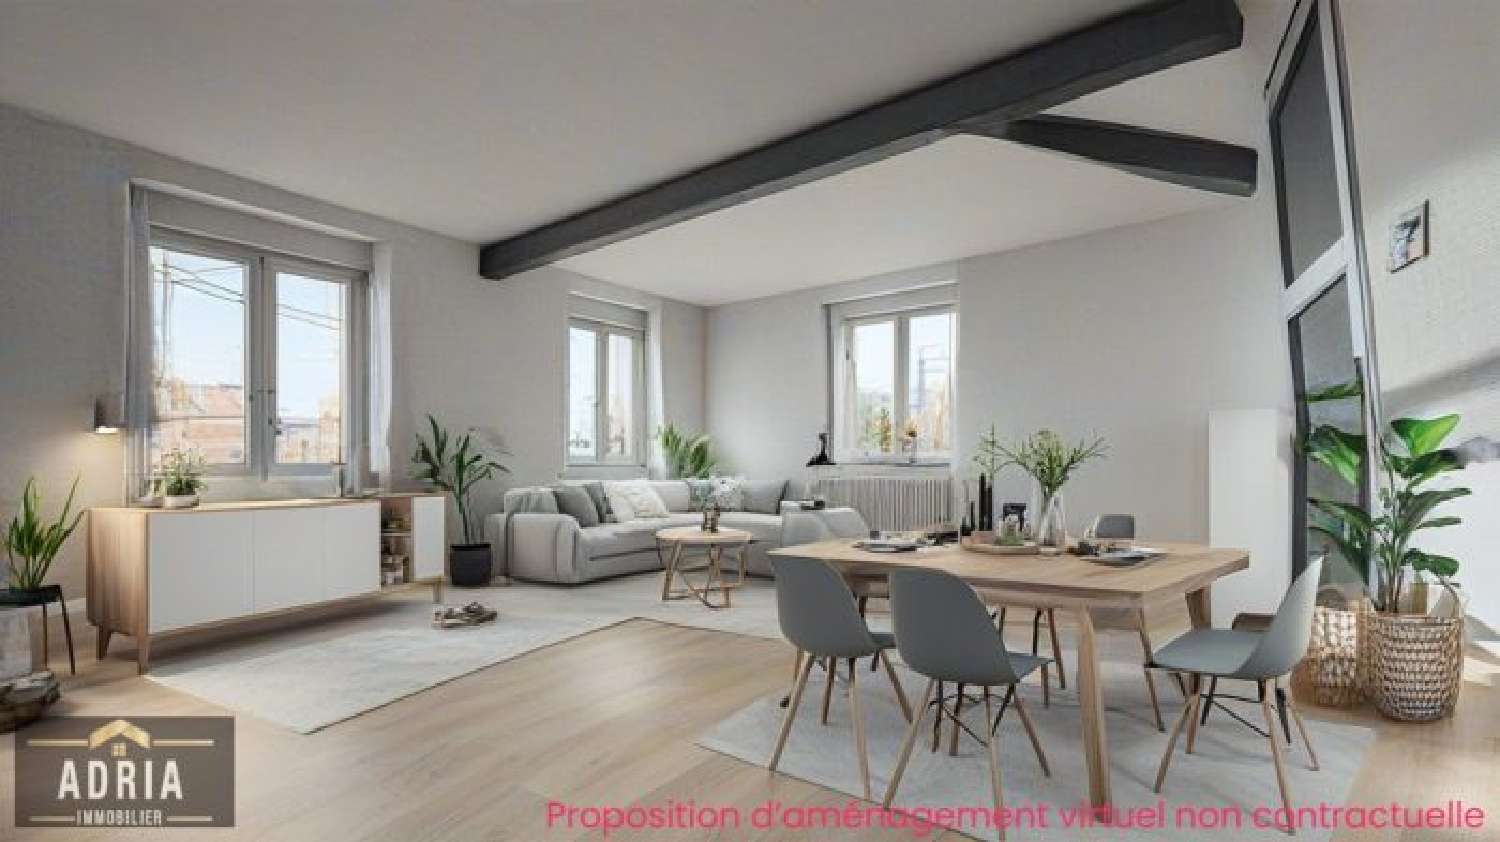  for sale apartment Maizières-lès-Metz Moselle 1